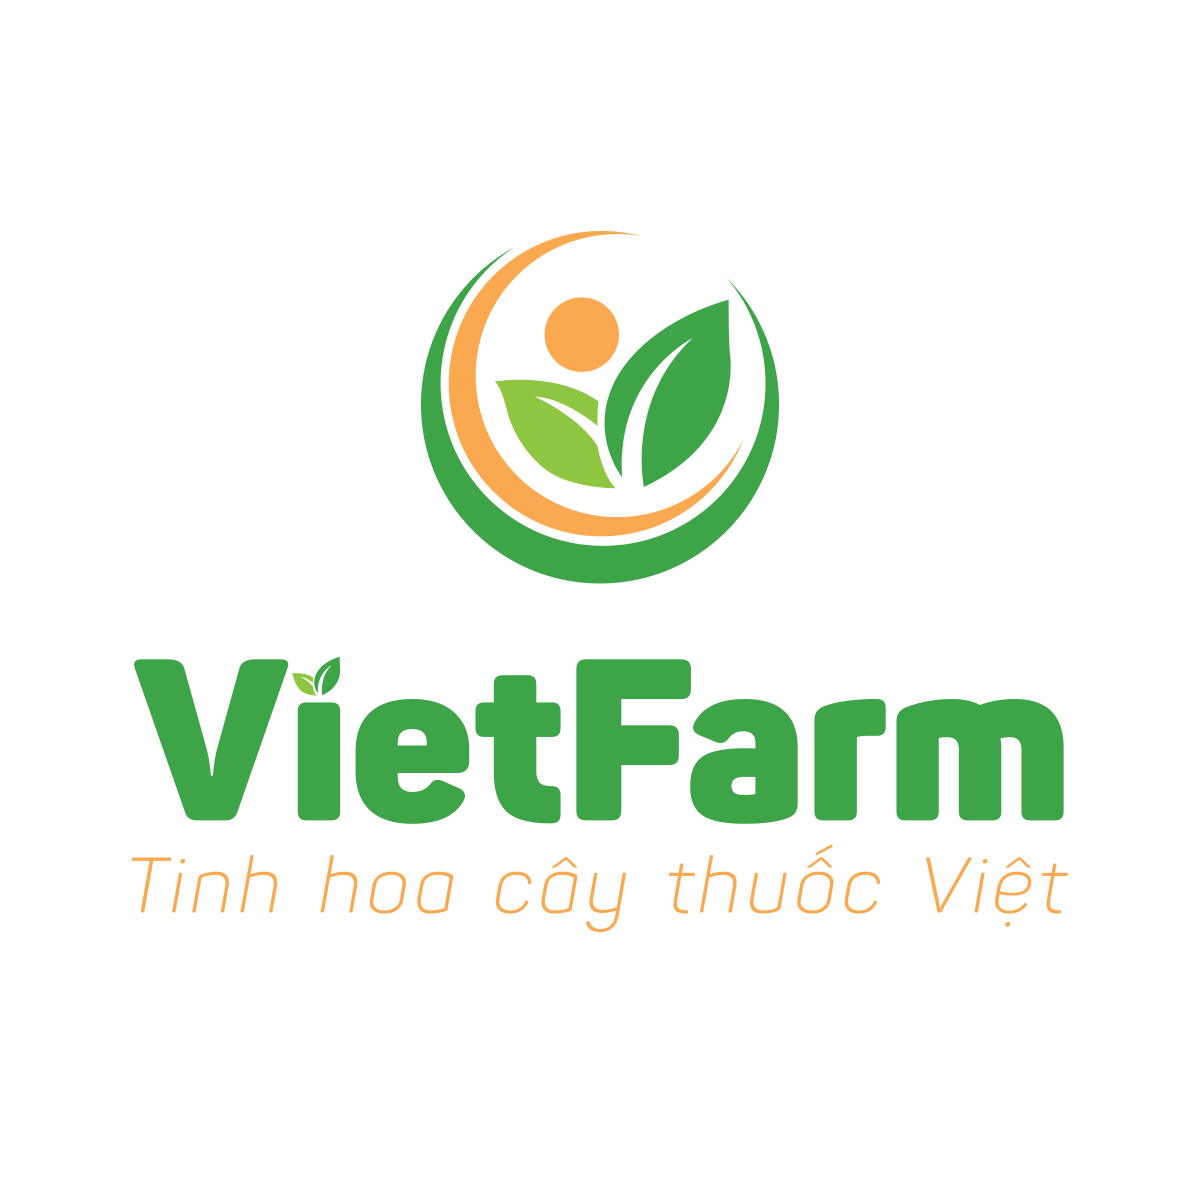 Công ty TNHH Việt Farm